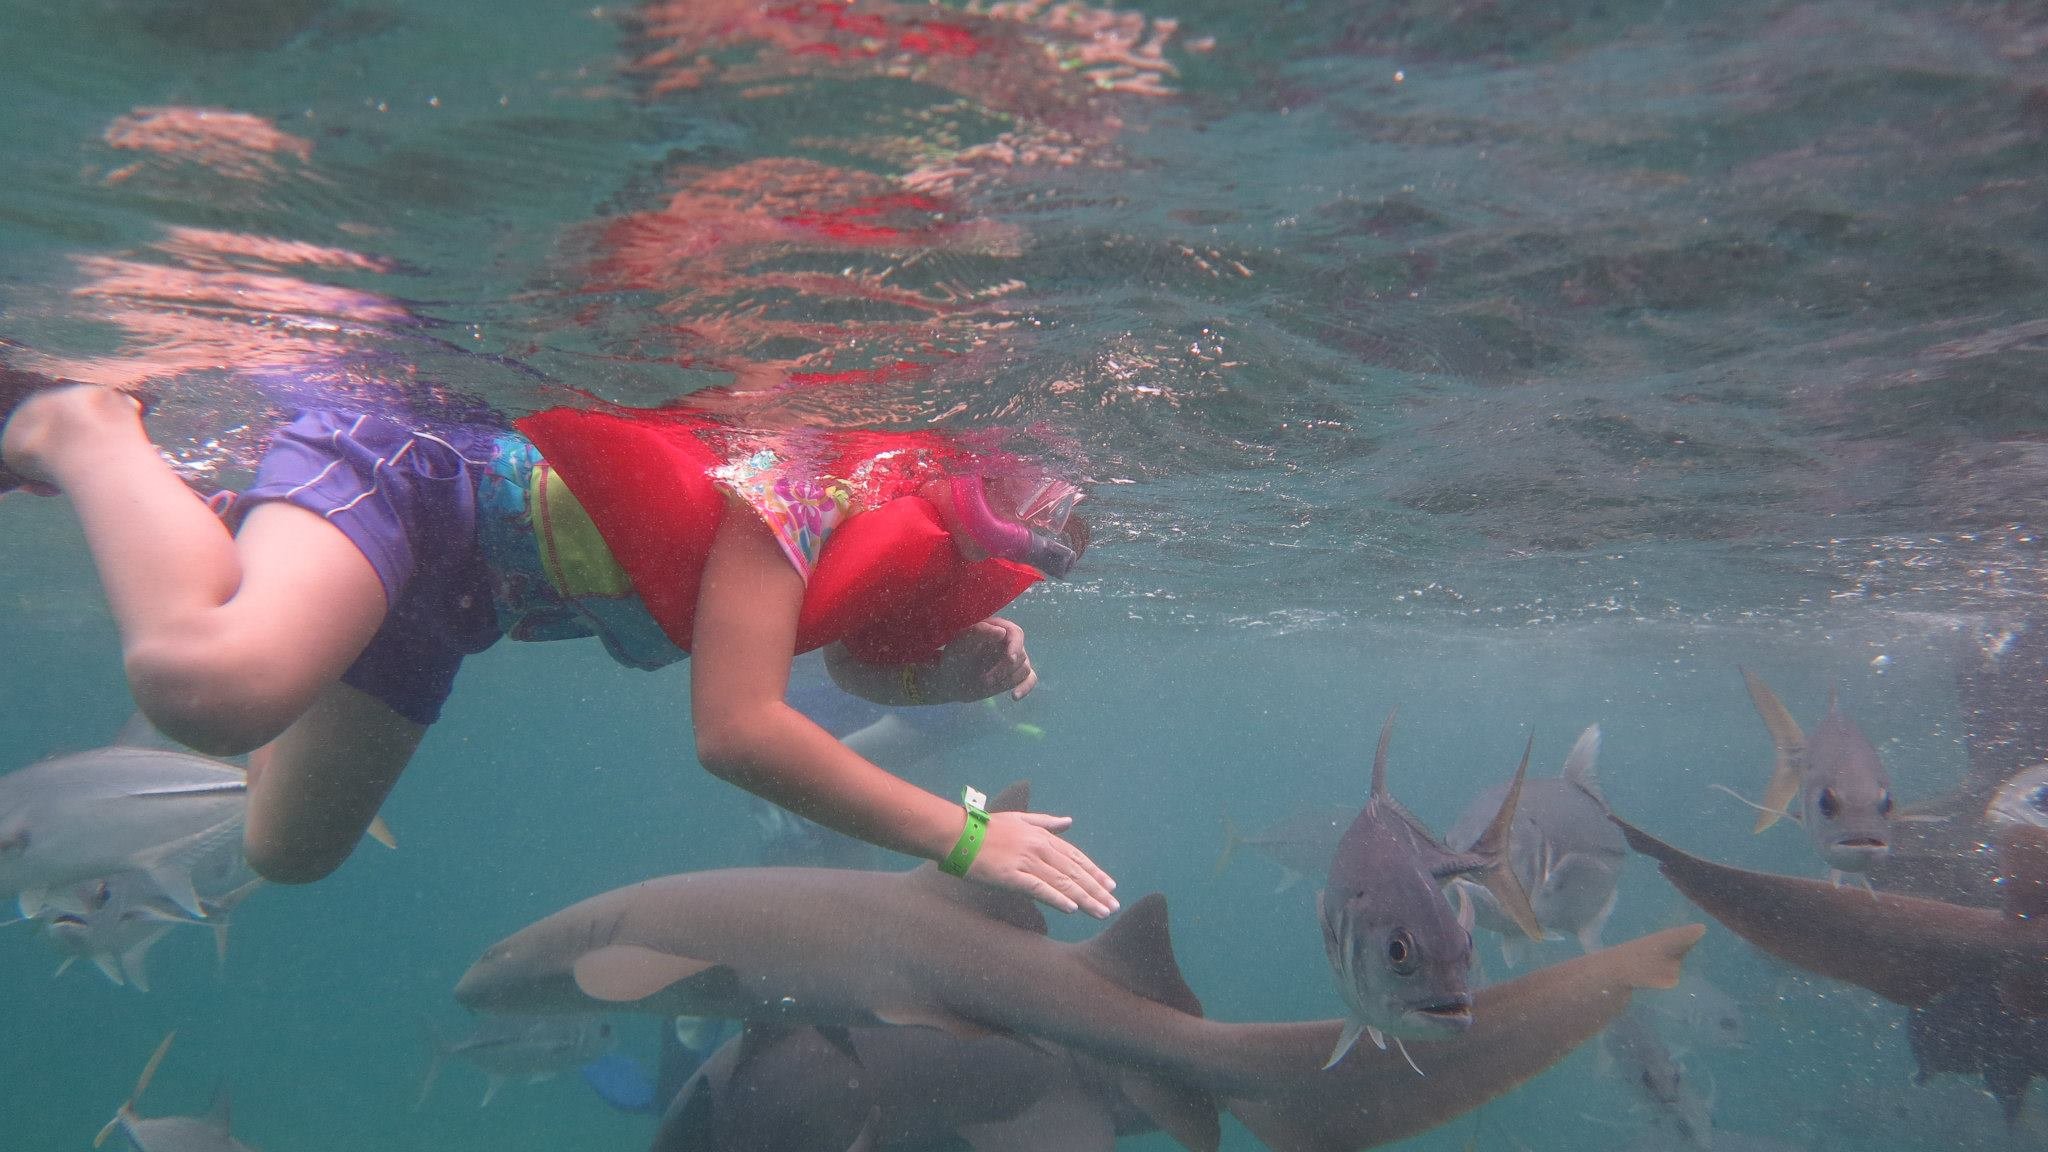 petting the shark